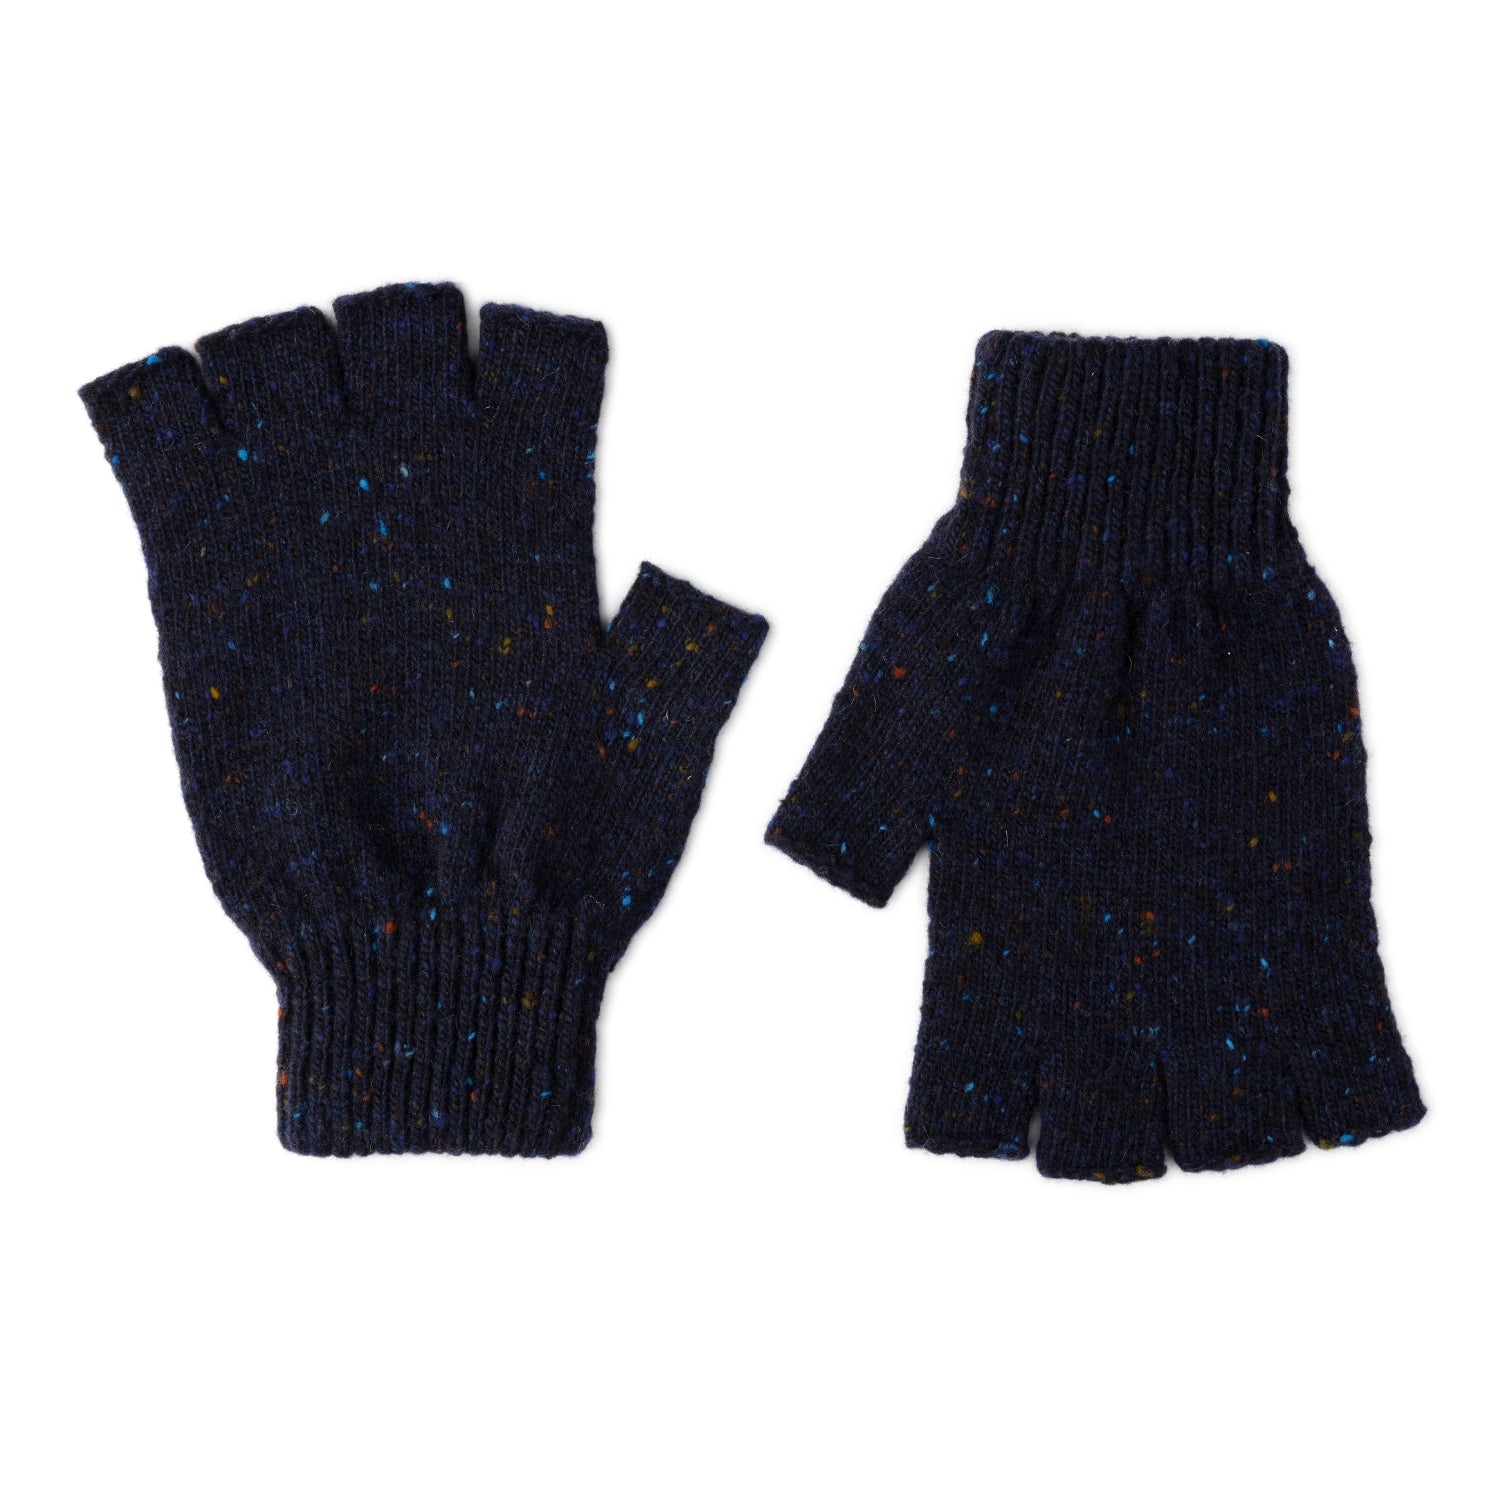 mens wool fingerless gloves - navy